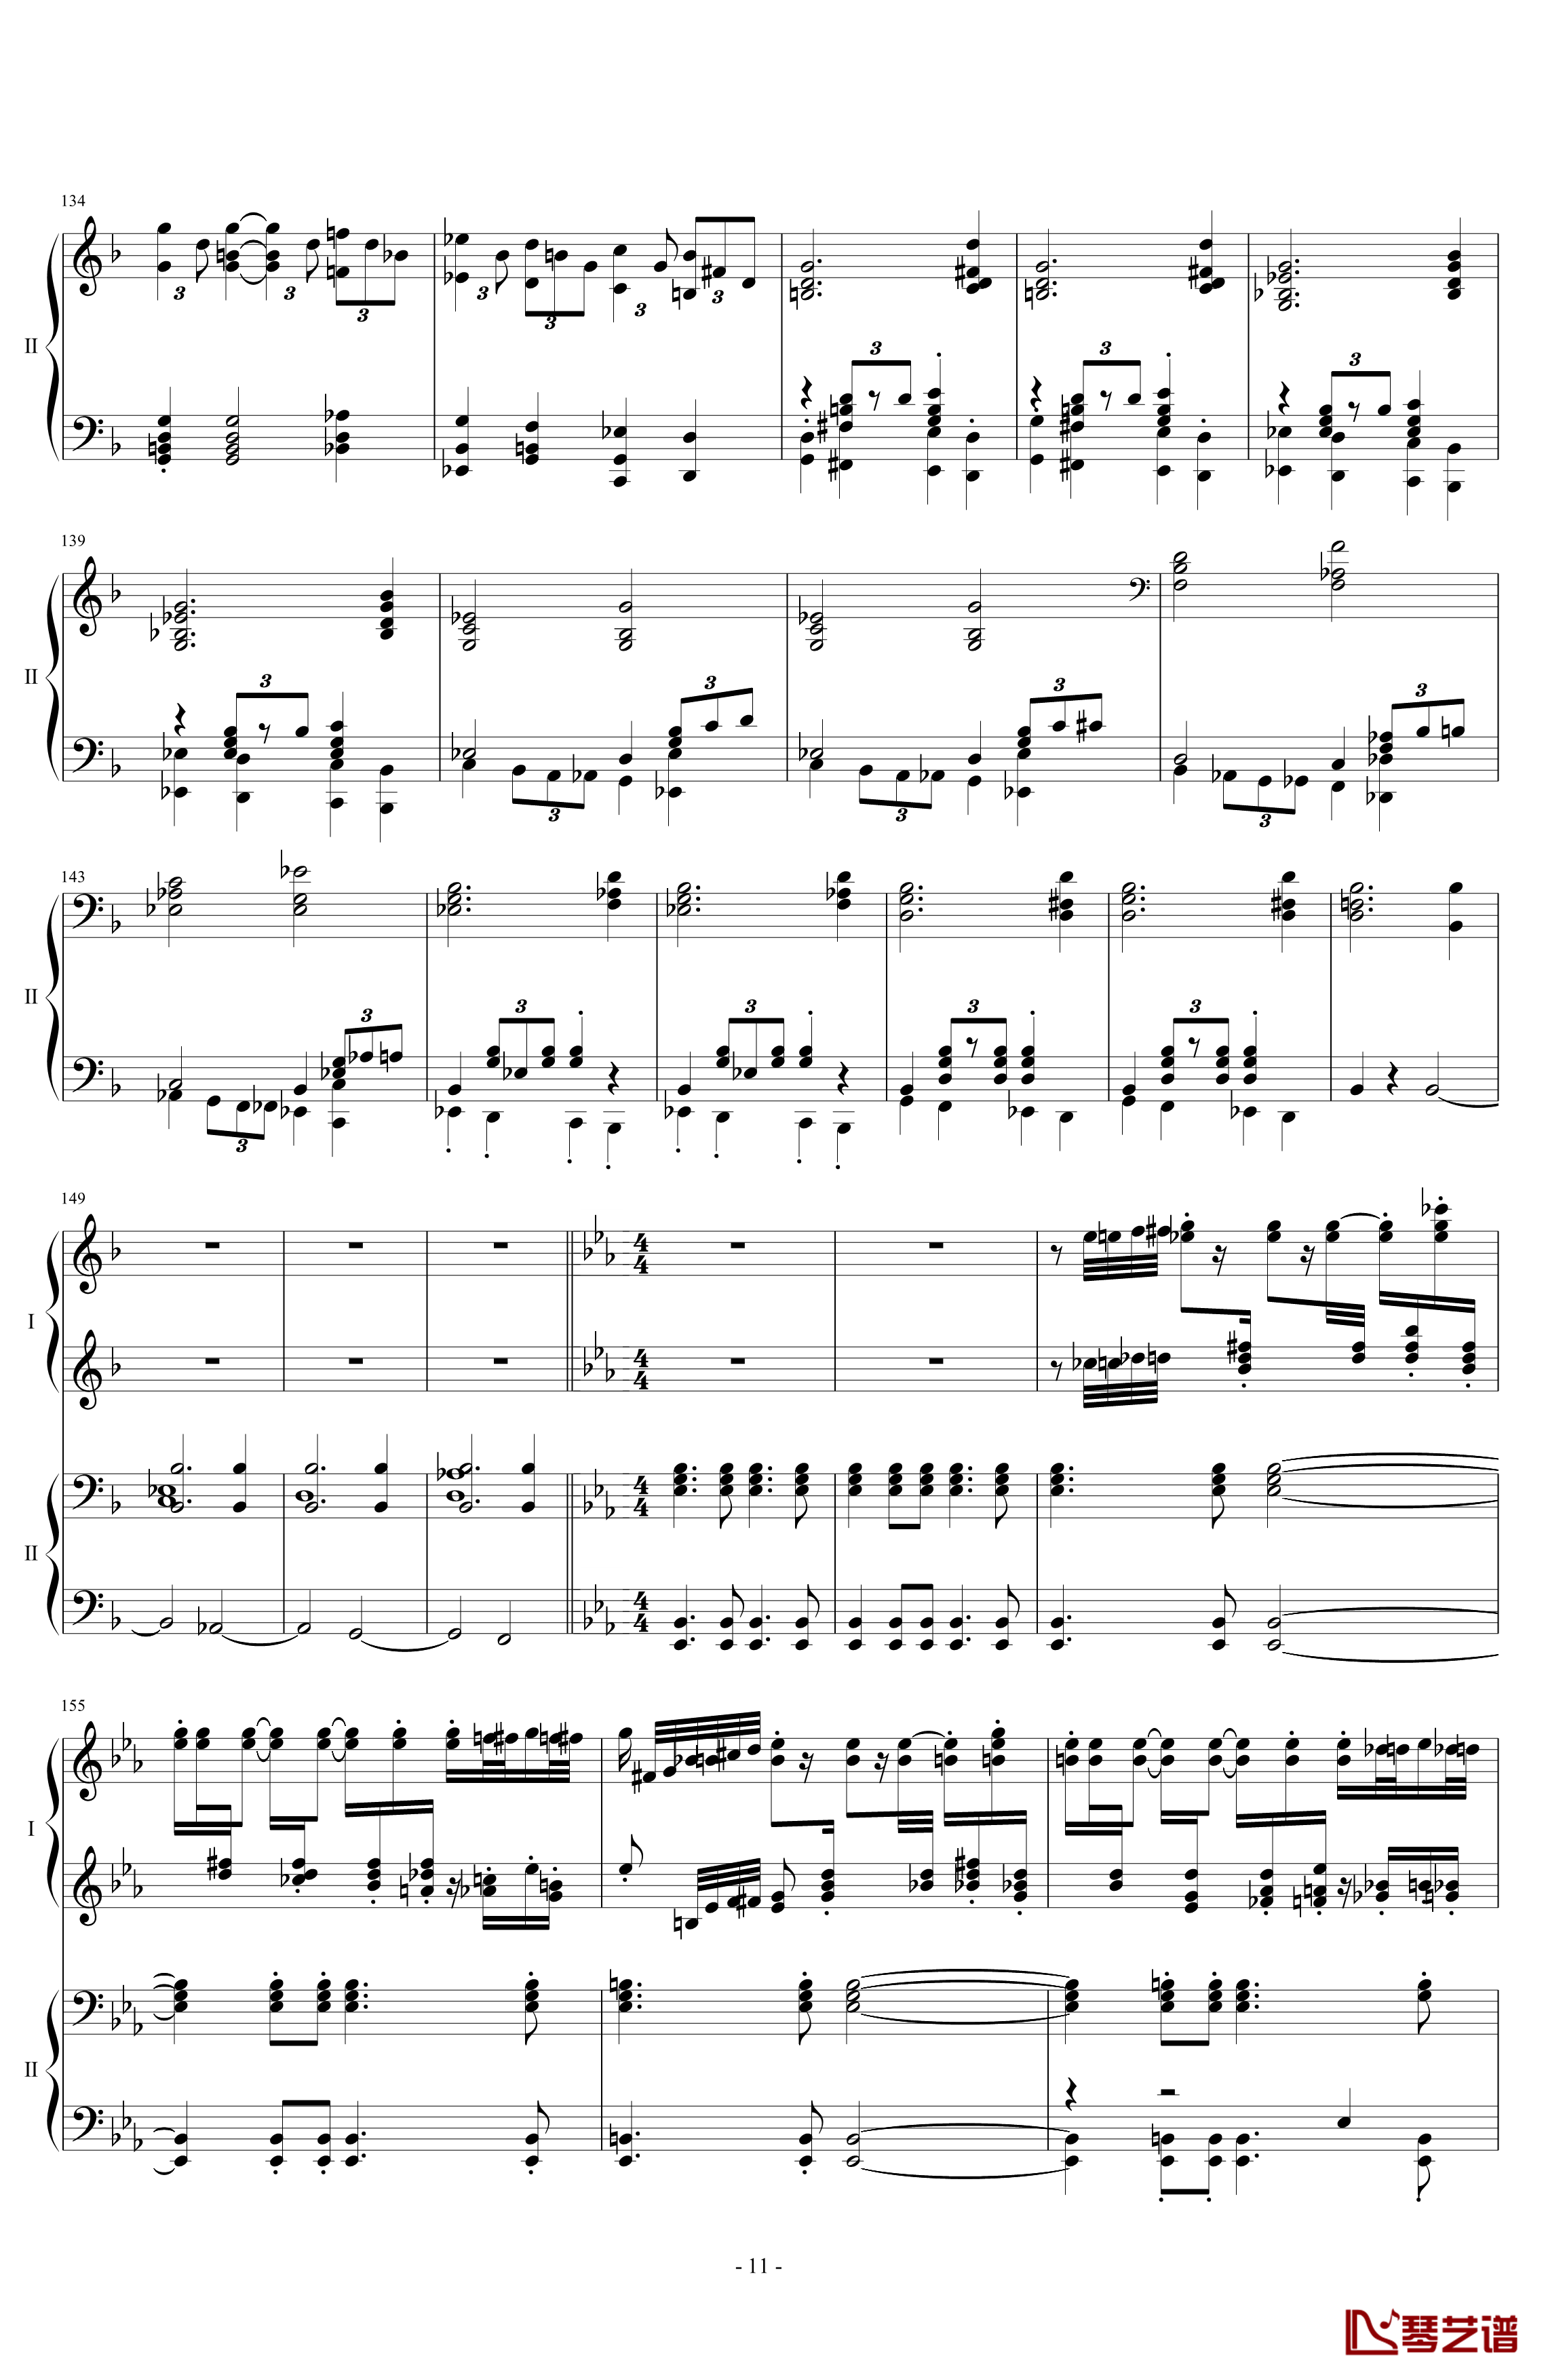 拉三第三乐章41页双钢琴钢琴谱-最难钢琴曲-拉赫马尼若夫11